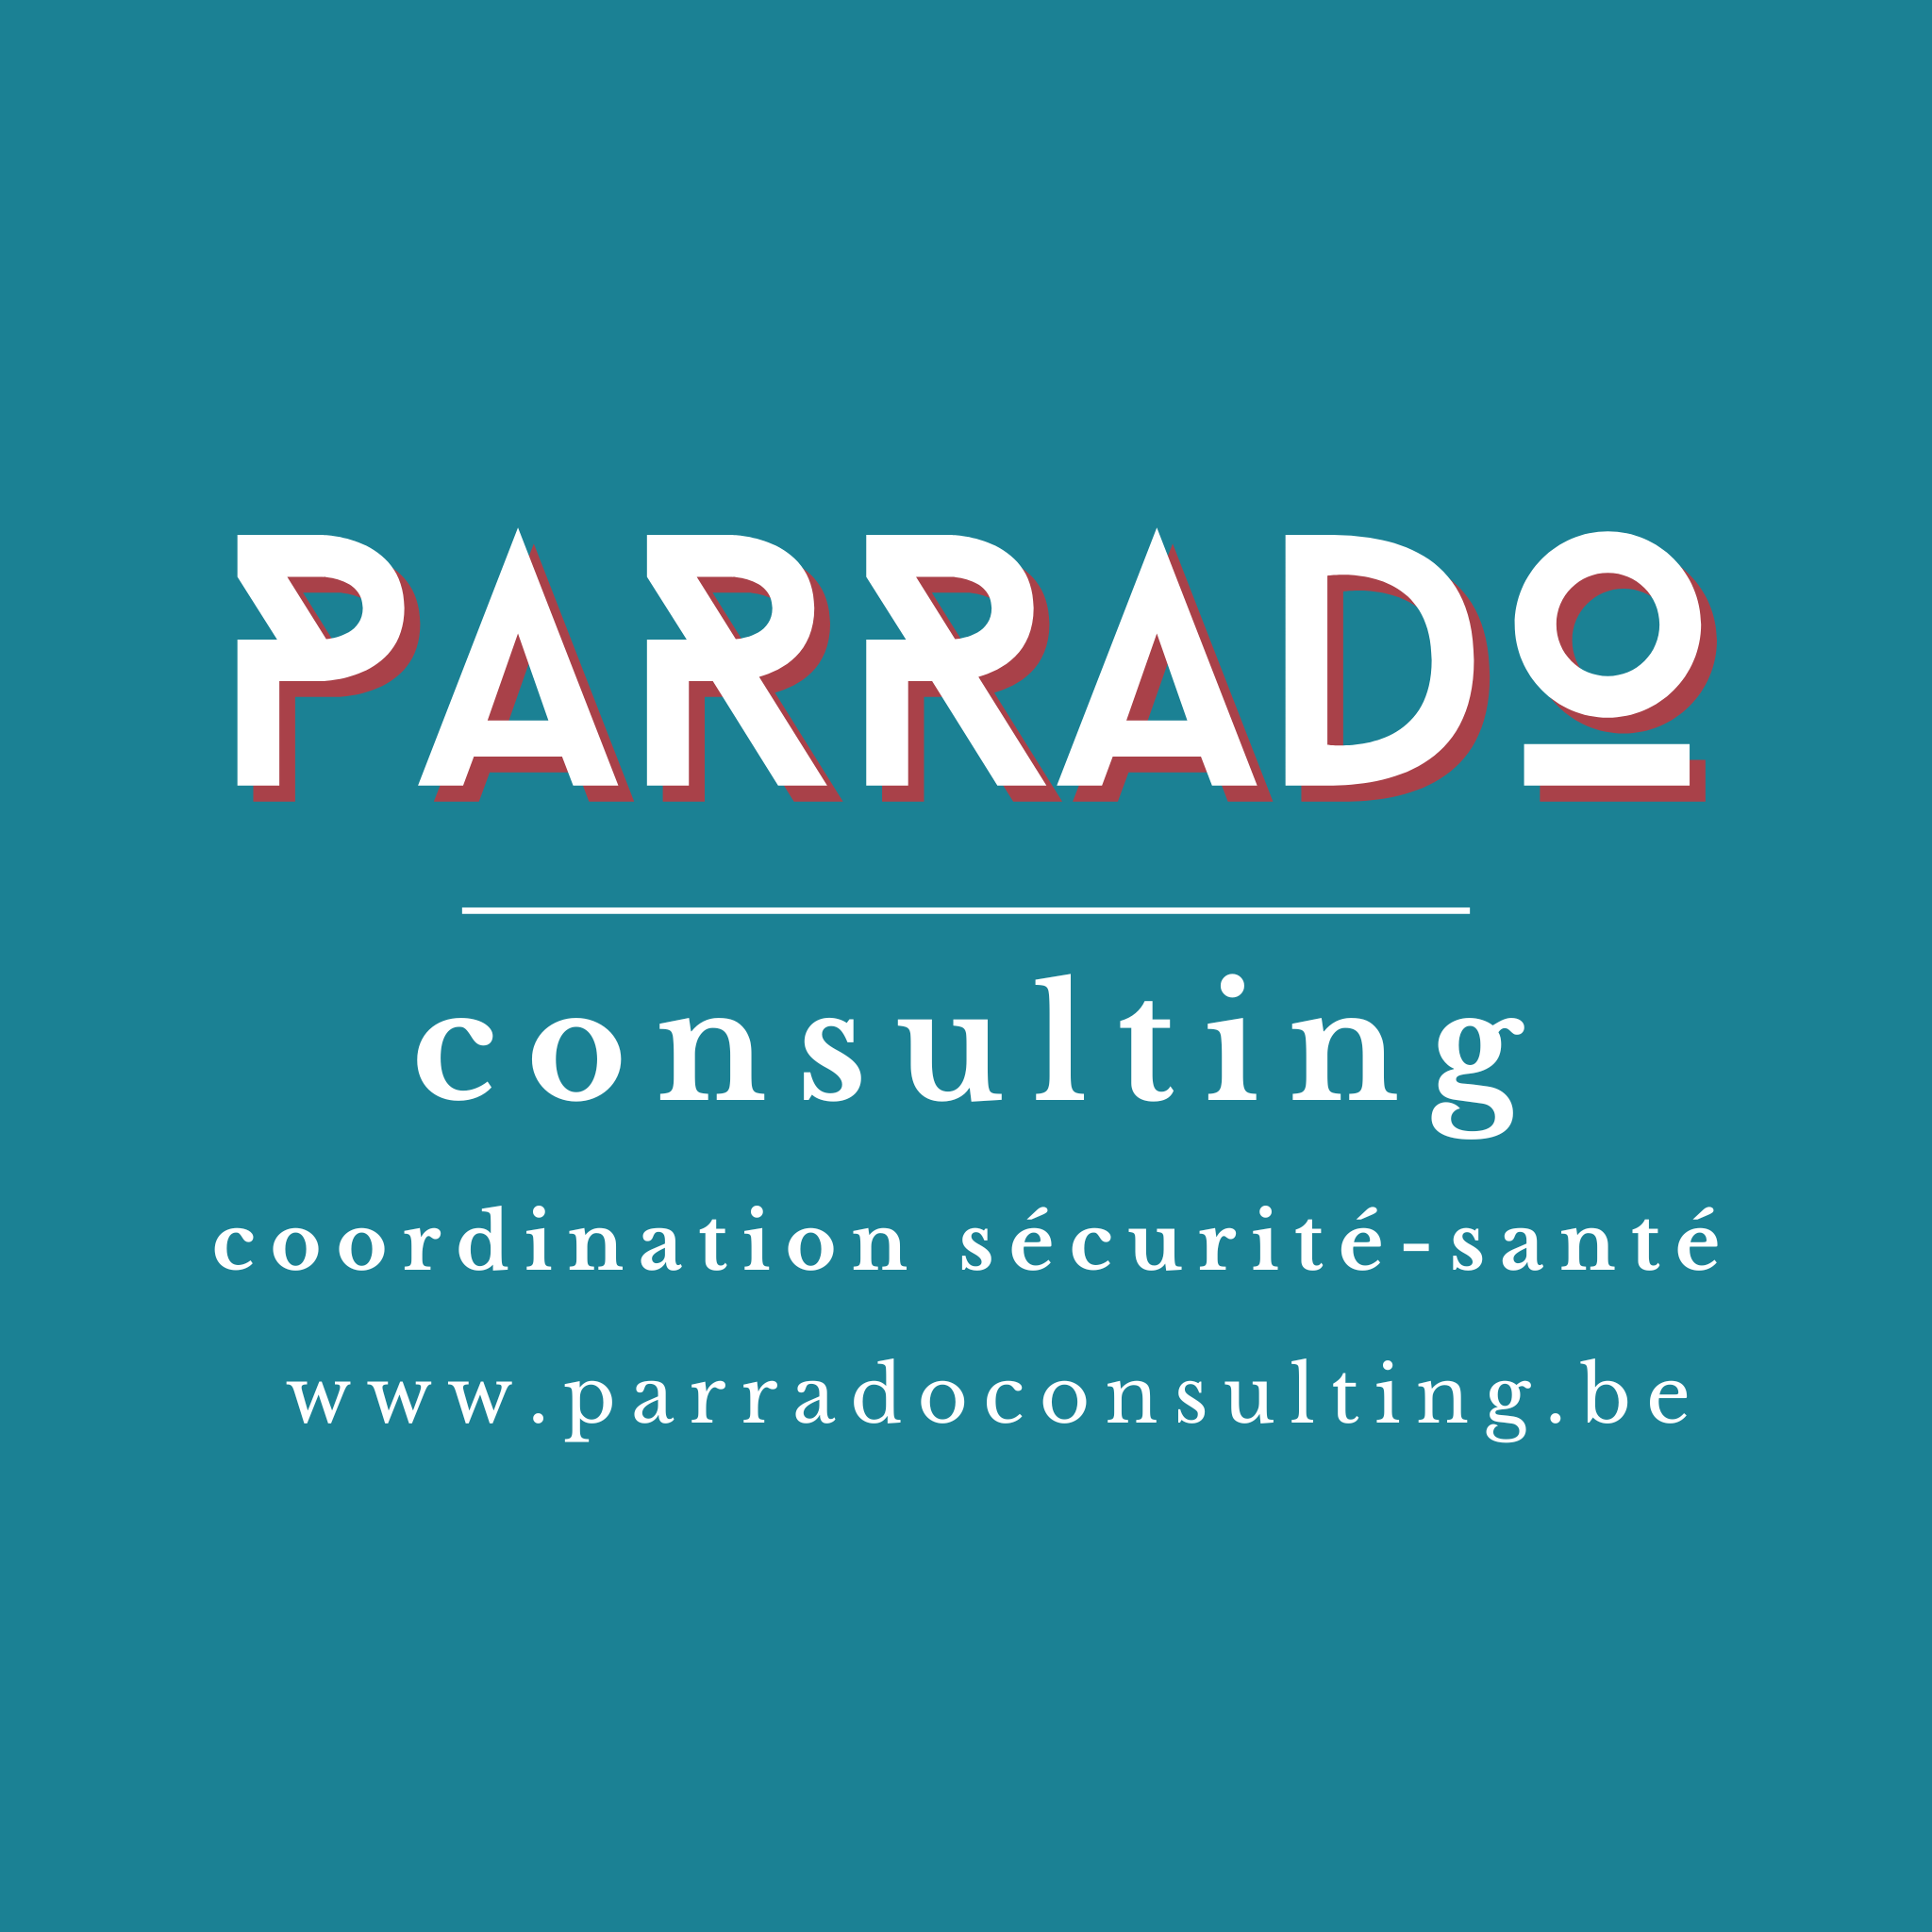 Parrado Consulting